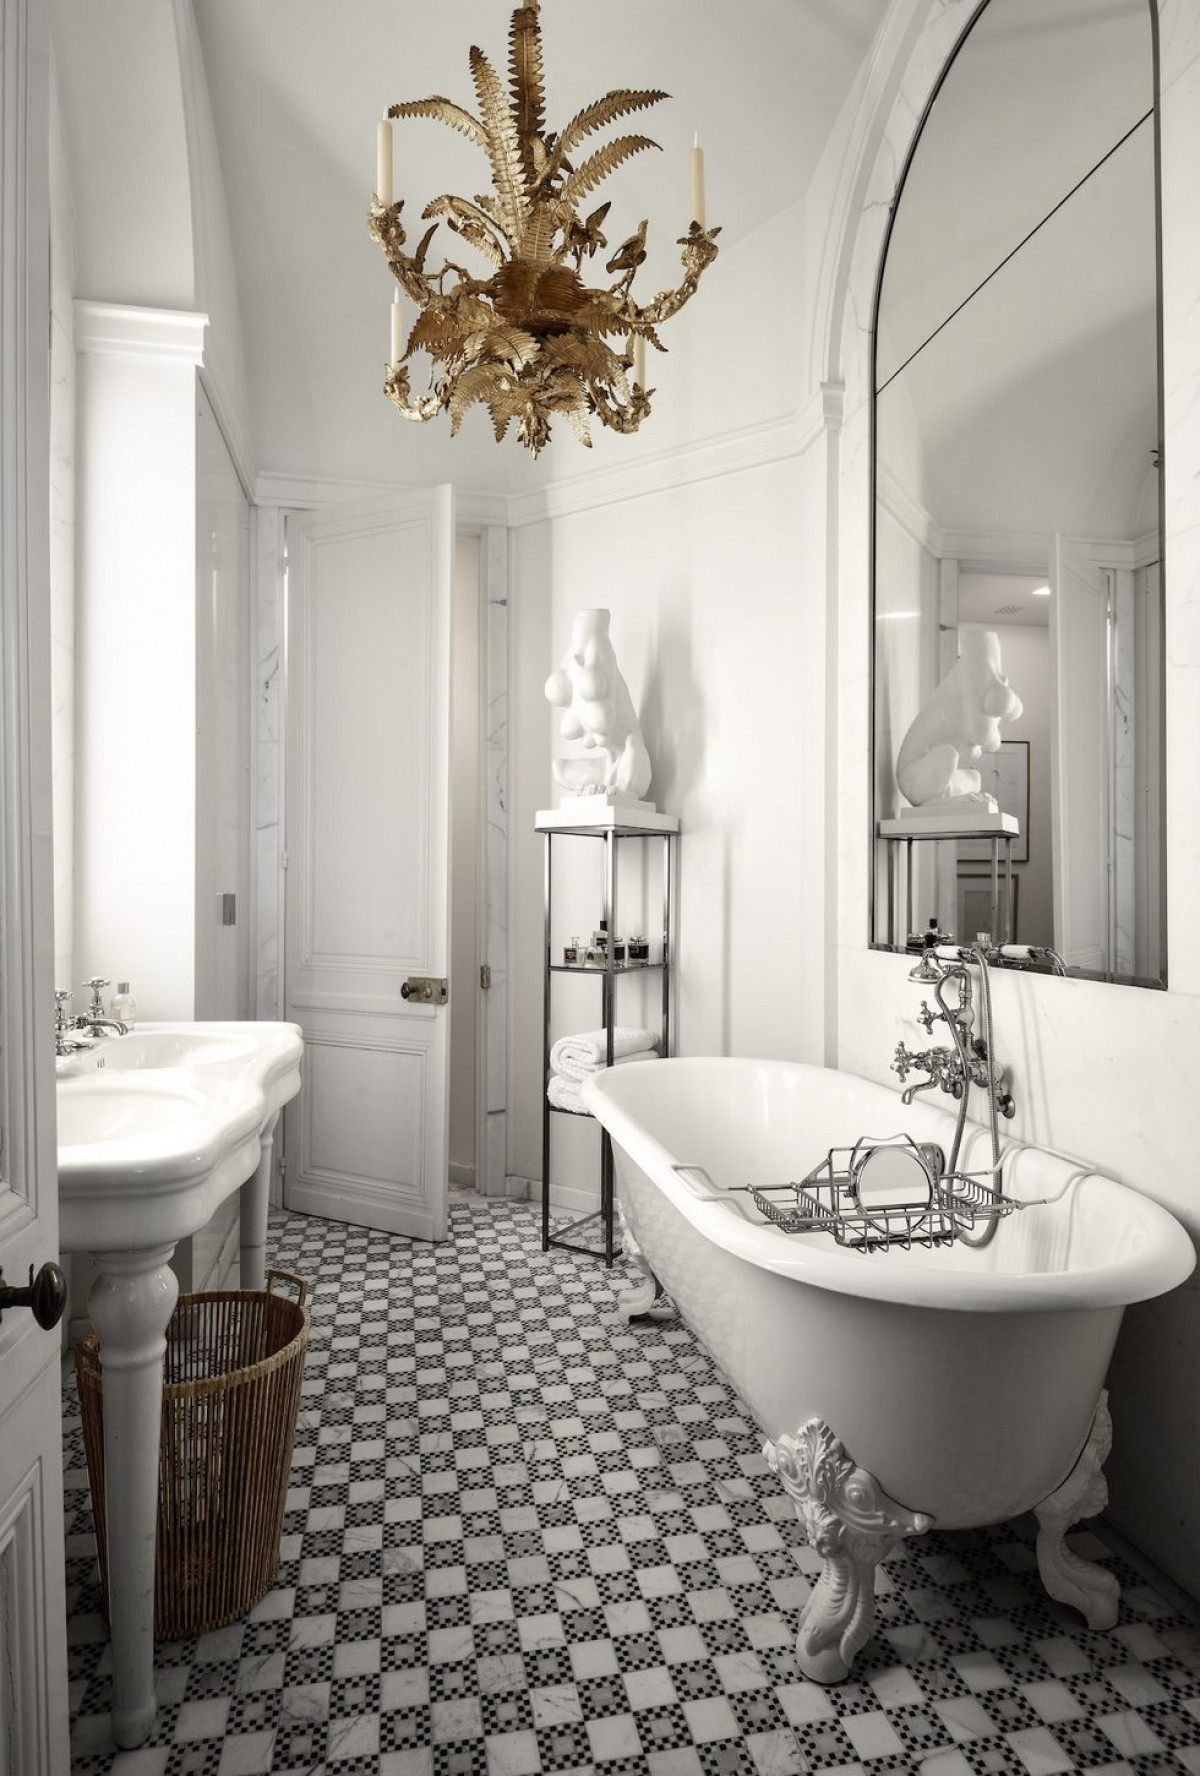 Hãy tạo điểm nhấn nghệ thuật cho phòng tắm bằng cách sử dụng đèn chùm hoa lệ phù hợp với không gian. 